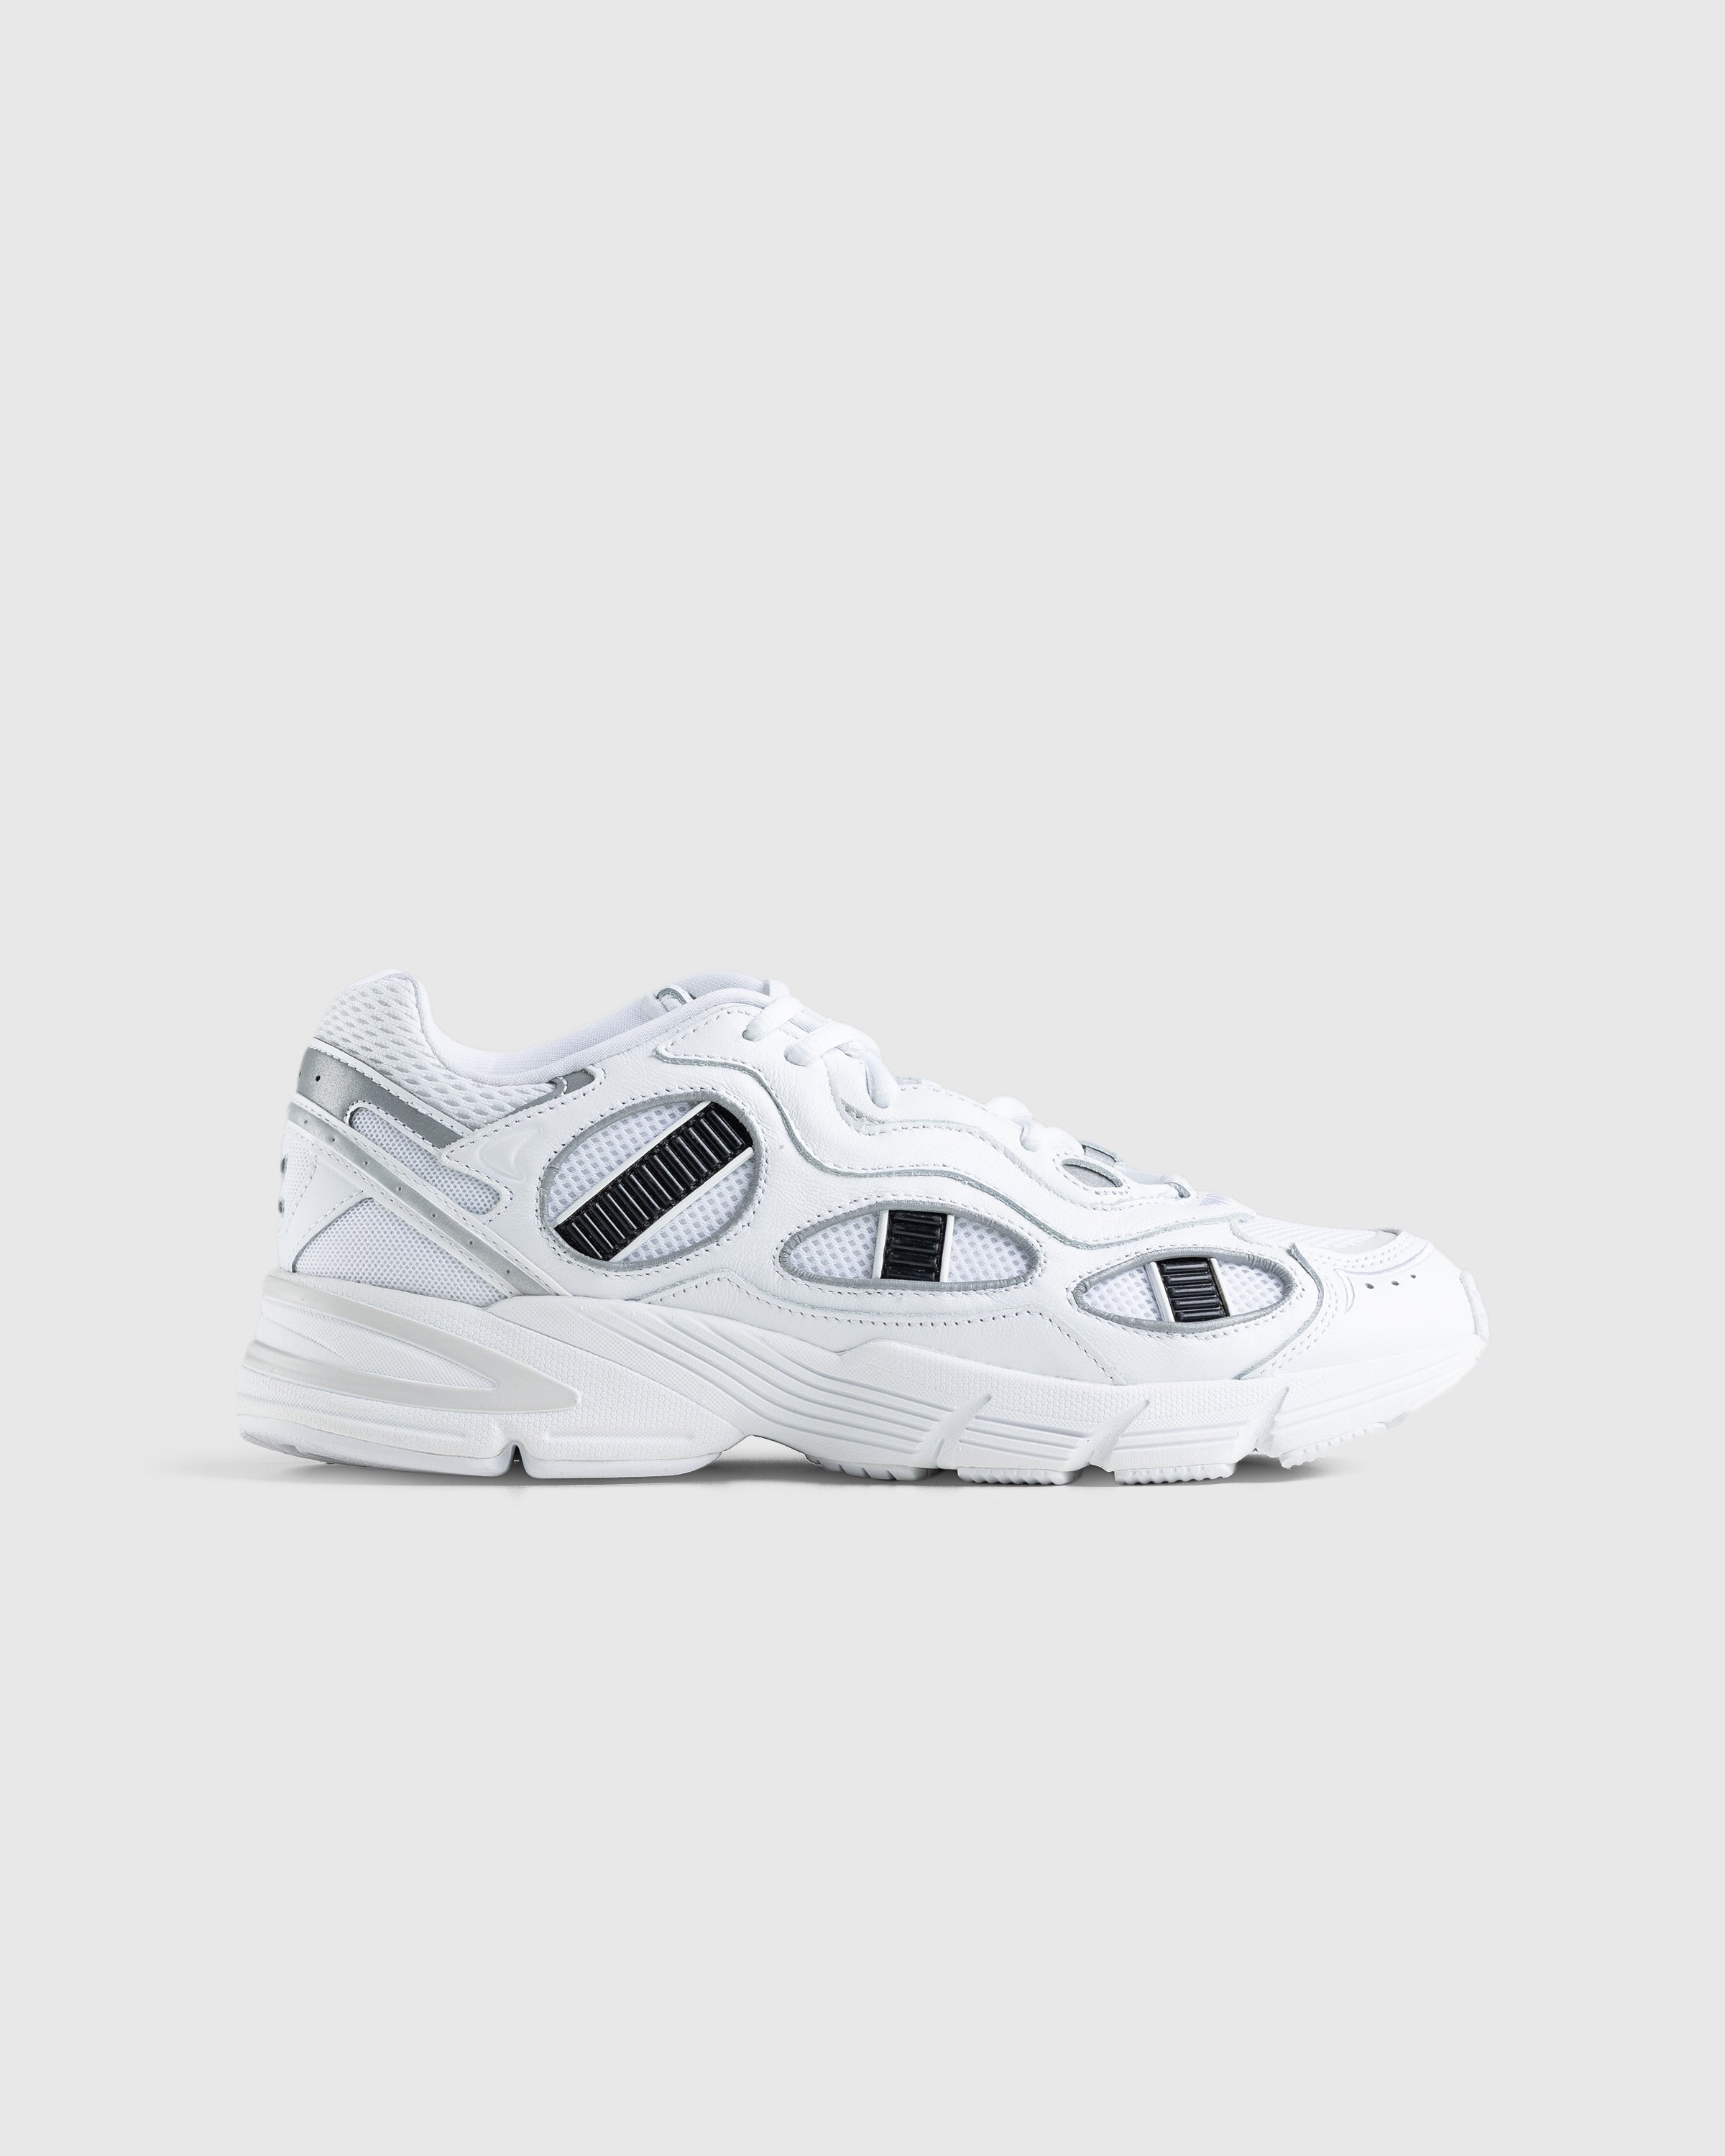 Adidas - Astir Sn White - Footwear - White - Image 1